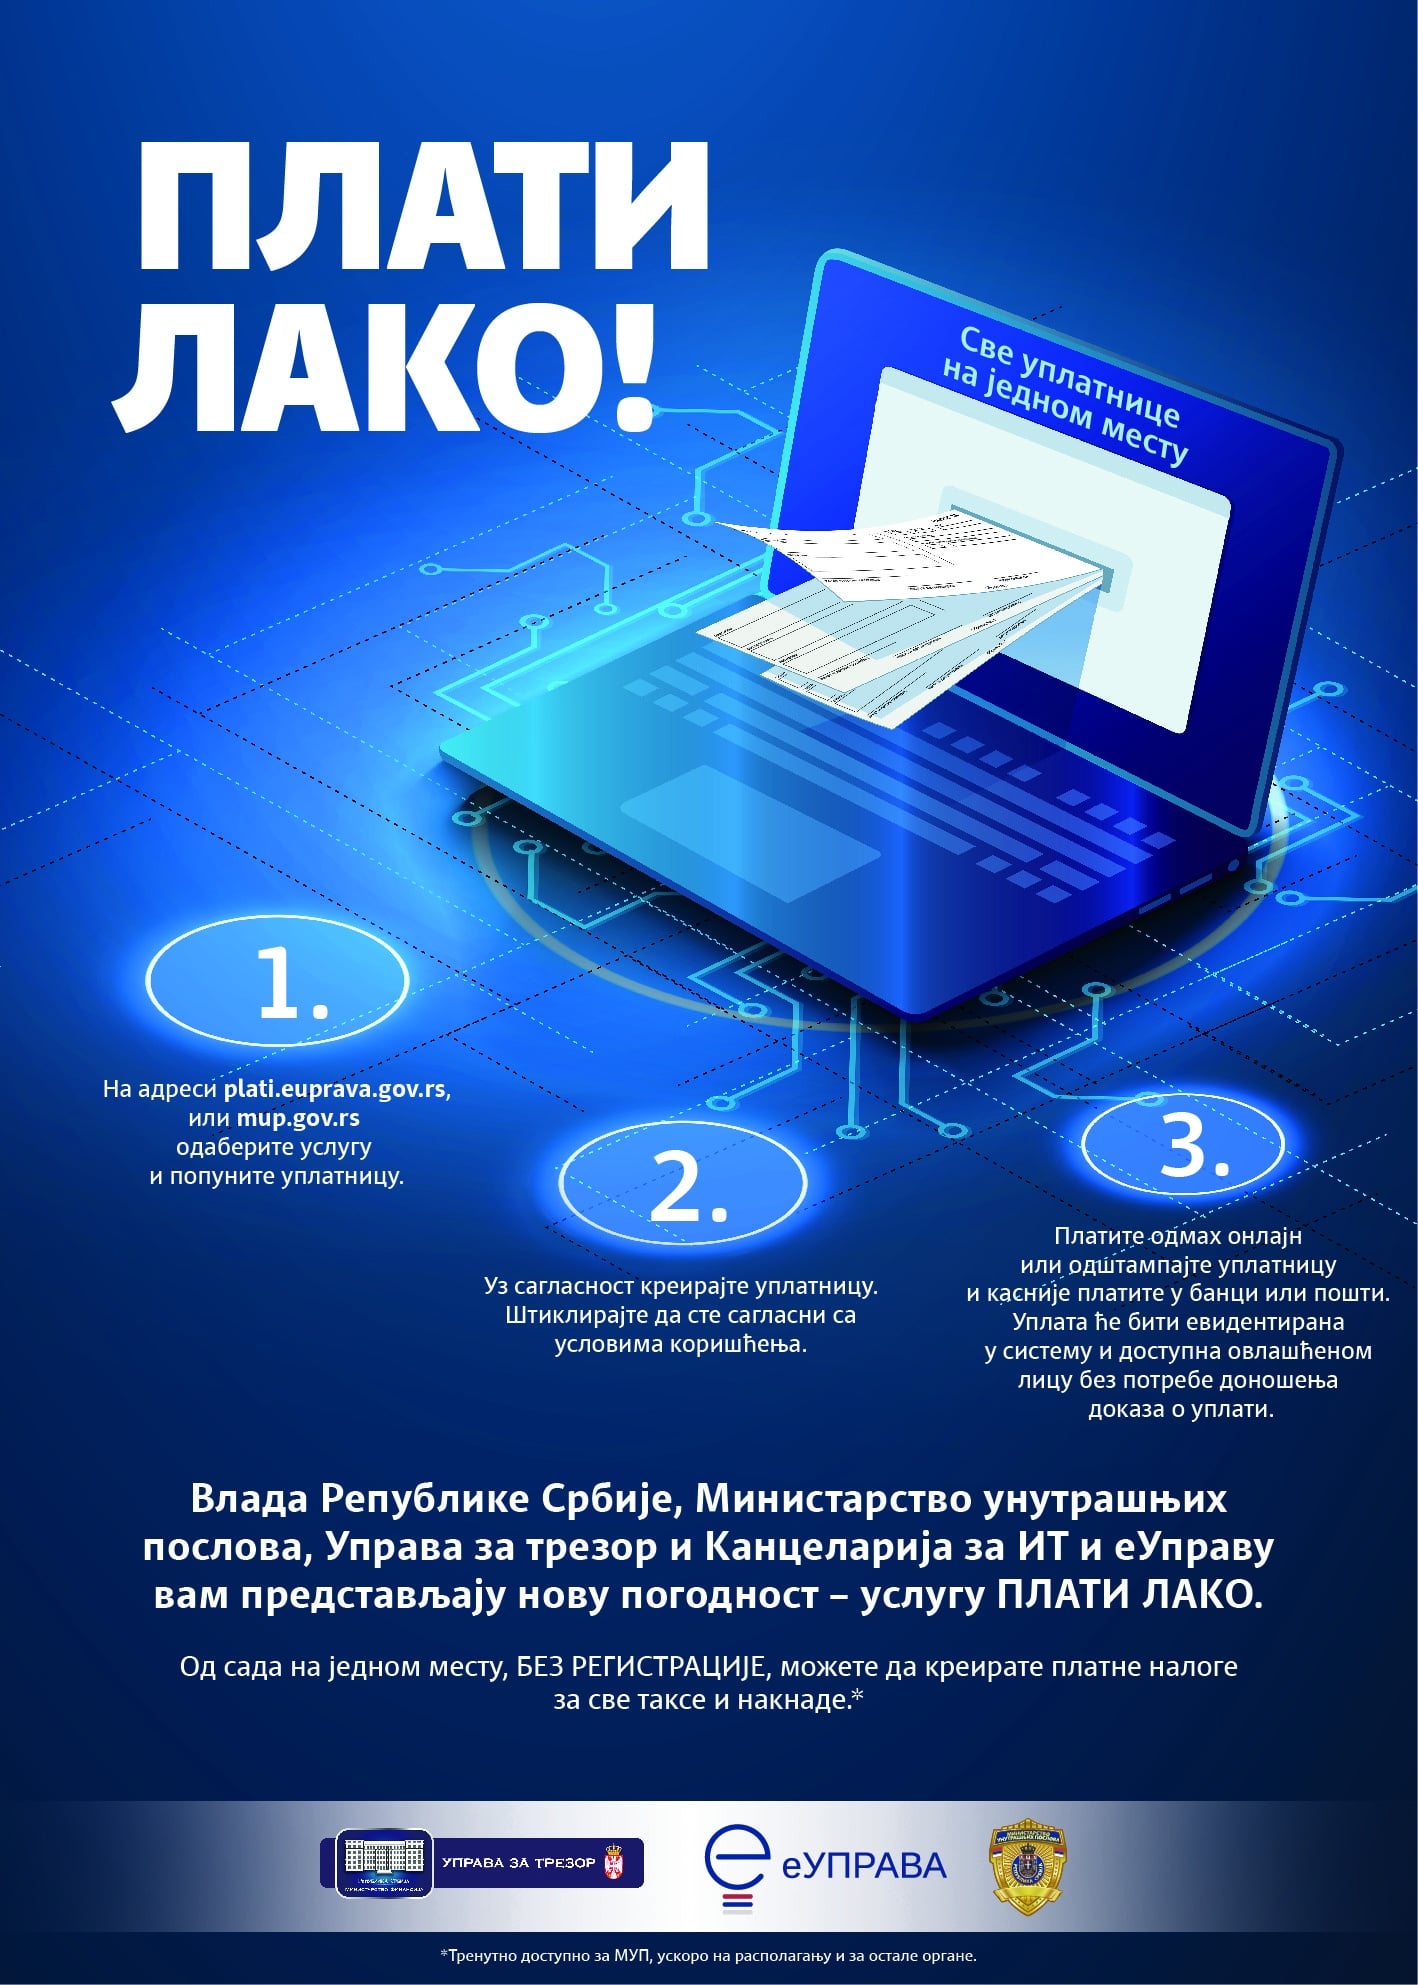 Sve više građana Srbije koristi elektronske usluge 2